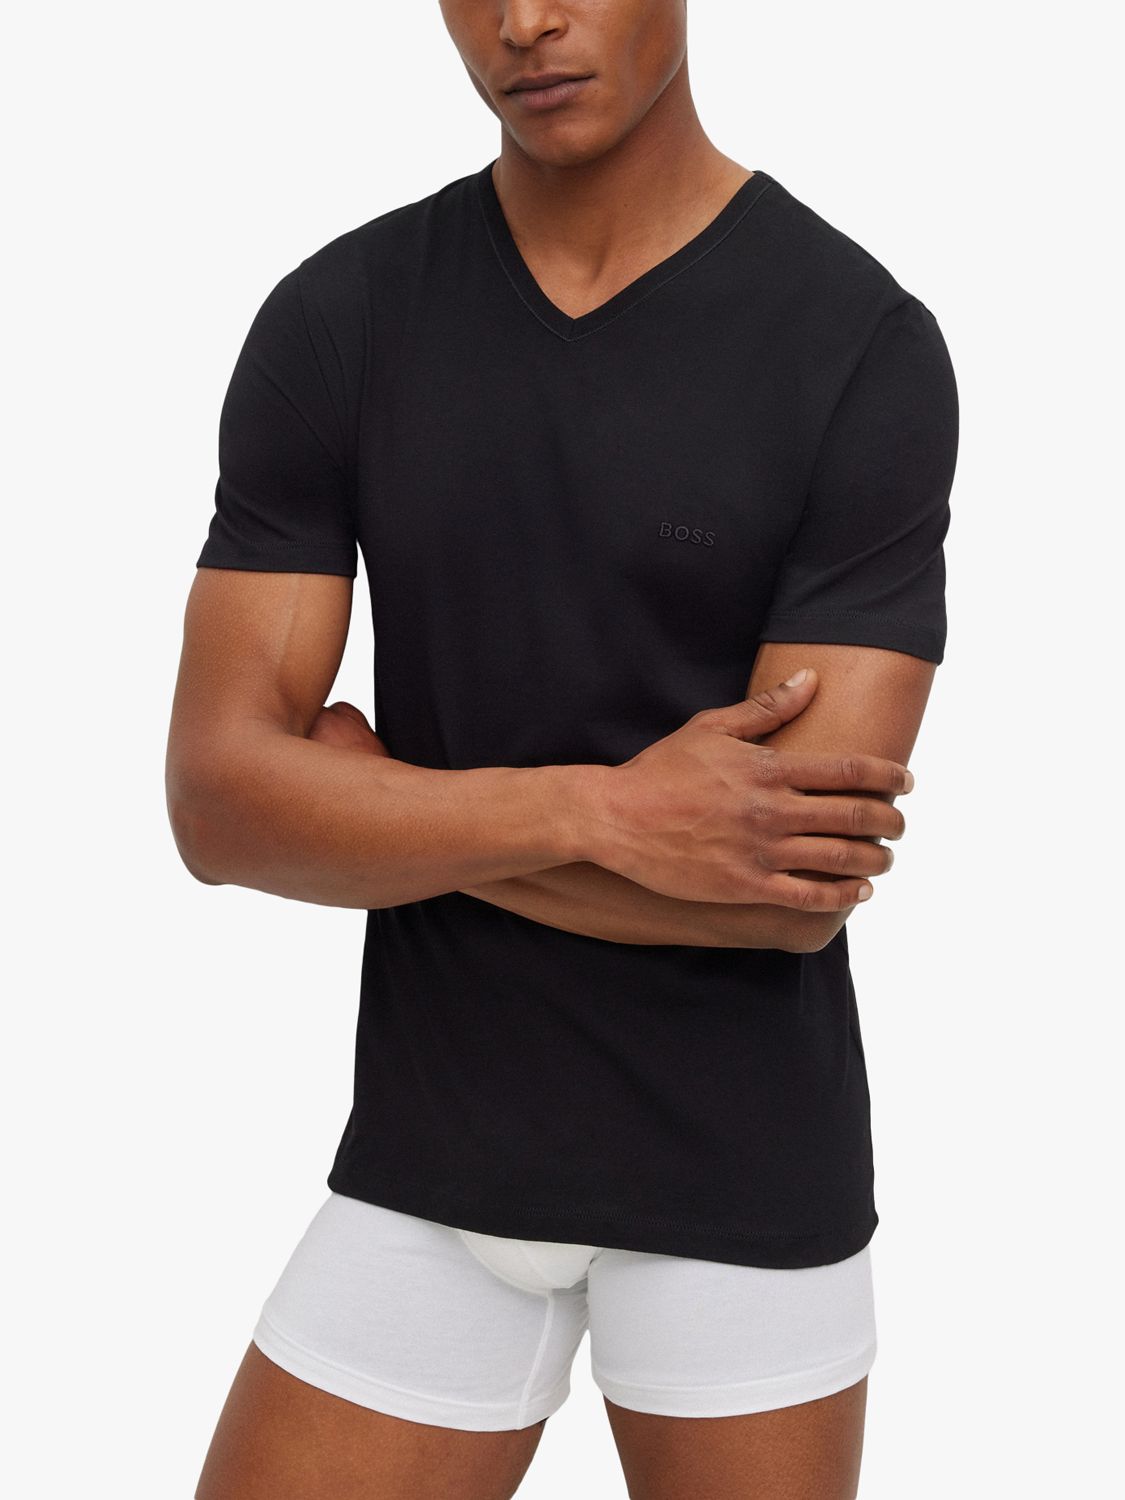 HUGO BOSS Embroidered Logo Cotton V-neck T-shirt, Pack of 3, White/Grey/Black, M